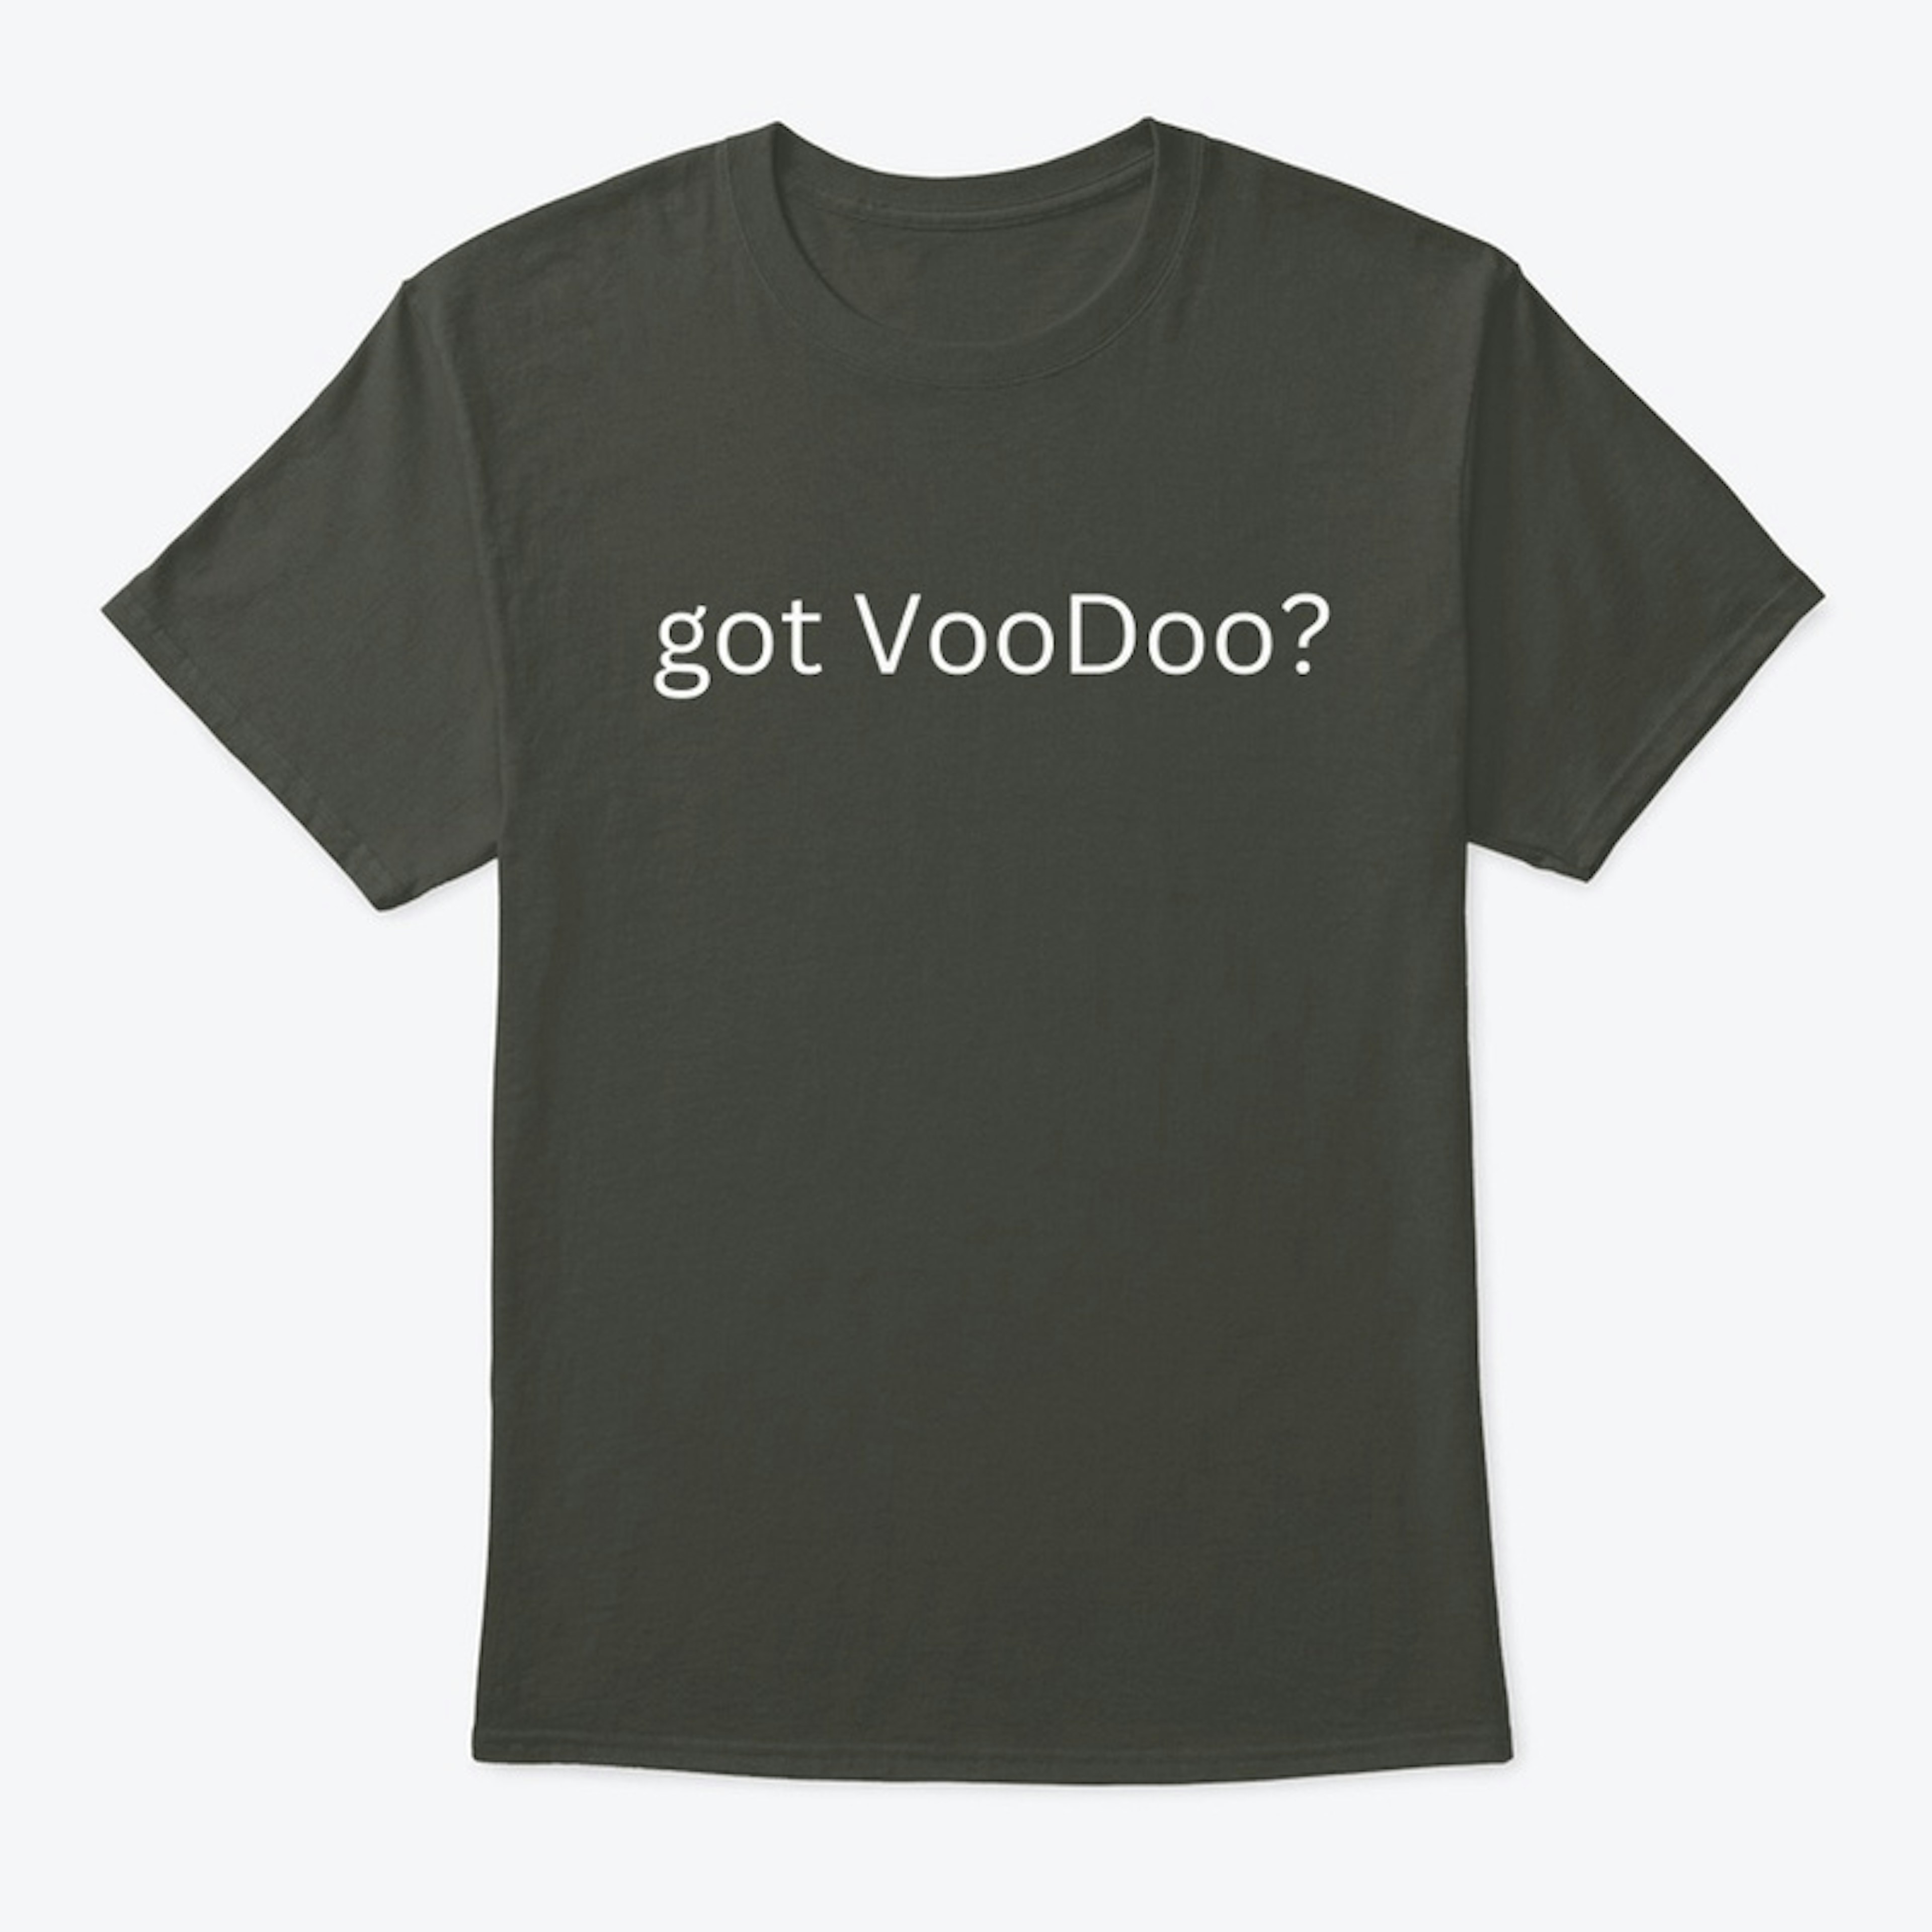 got VooDoo?